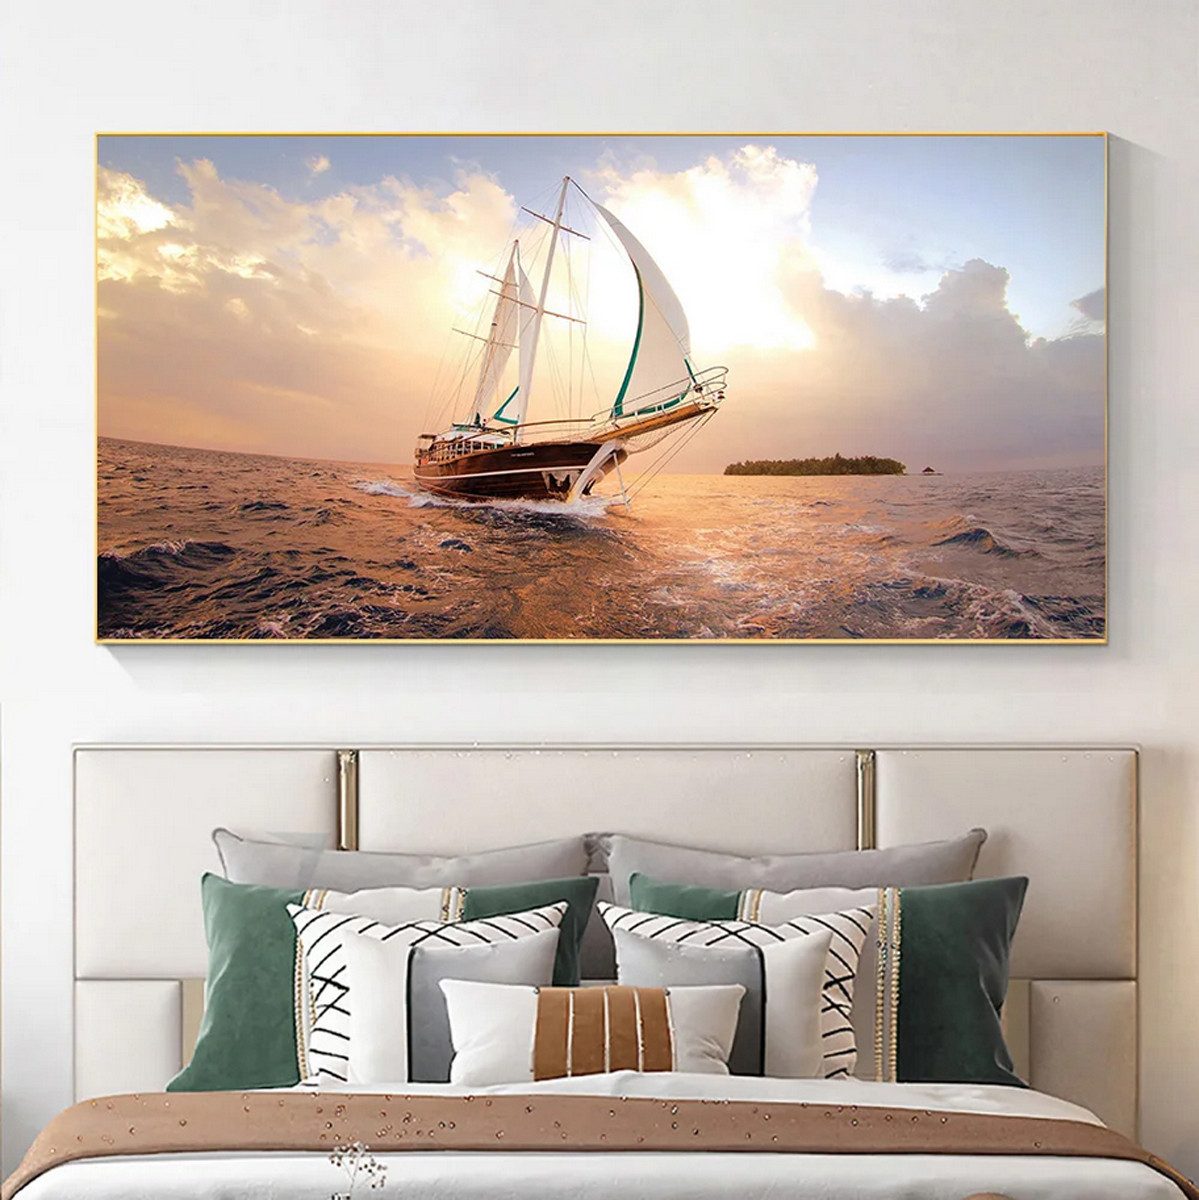 TPFLiving Kunstdruck (OHNE RAHMEN) Poster - Leinwand - Wandbild, Wunderschönes Segelboot auf dem weiten Meer-Leinwandgemälde (Leinwandbild XXL), Farben: Orange, Gelb, Blau, Weiß, Schwarz -Größe: 20x40cm